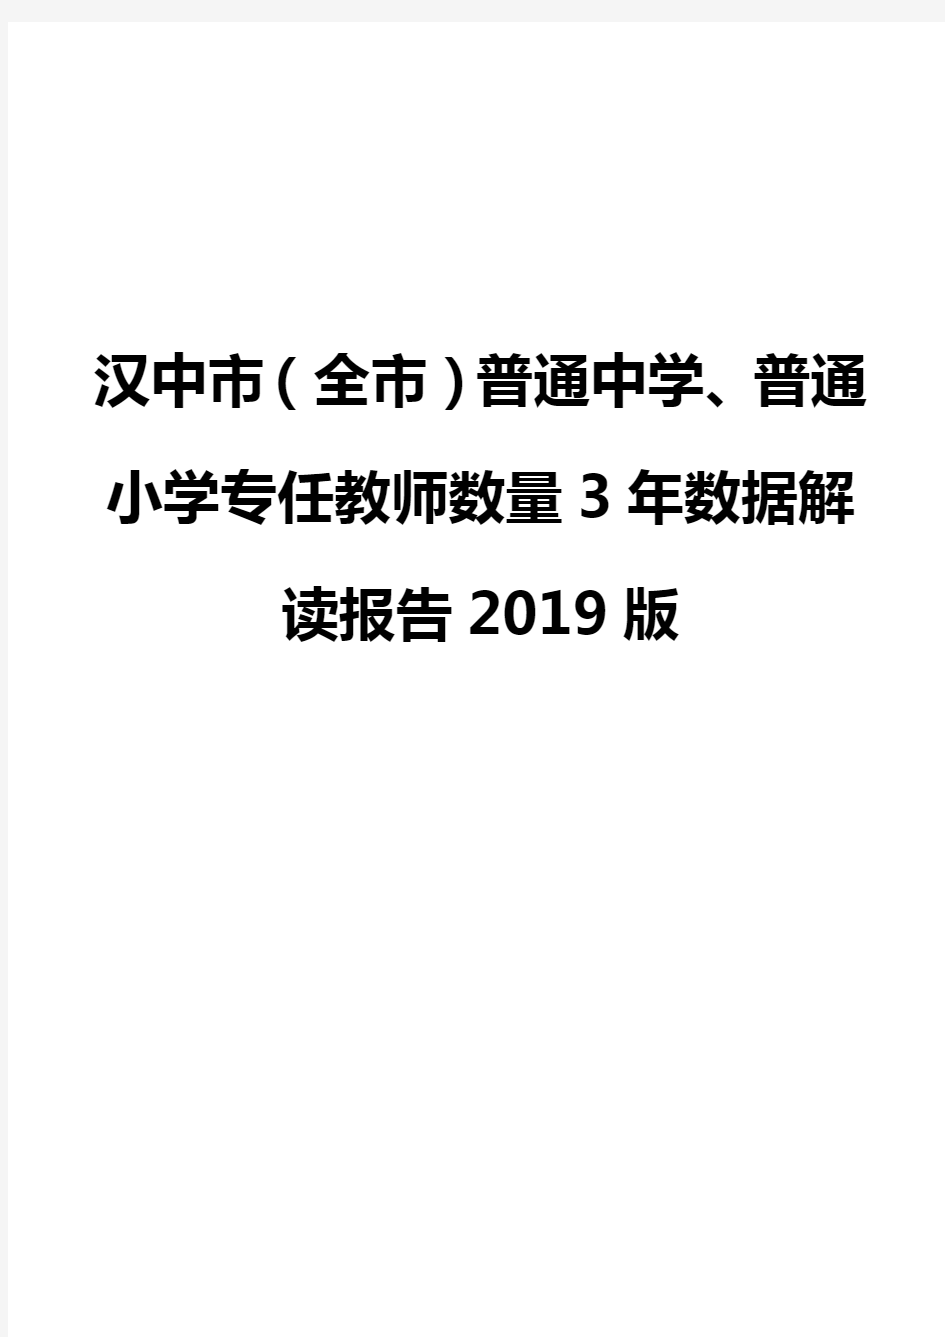 汉中市(全市)普通中学、普通小学专任教师数量3年数据解读报告2019版